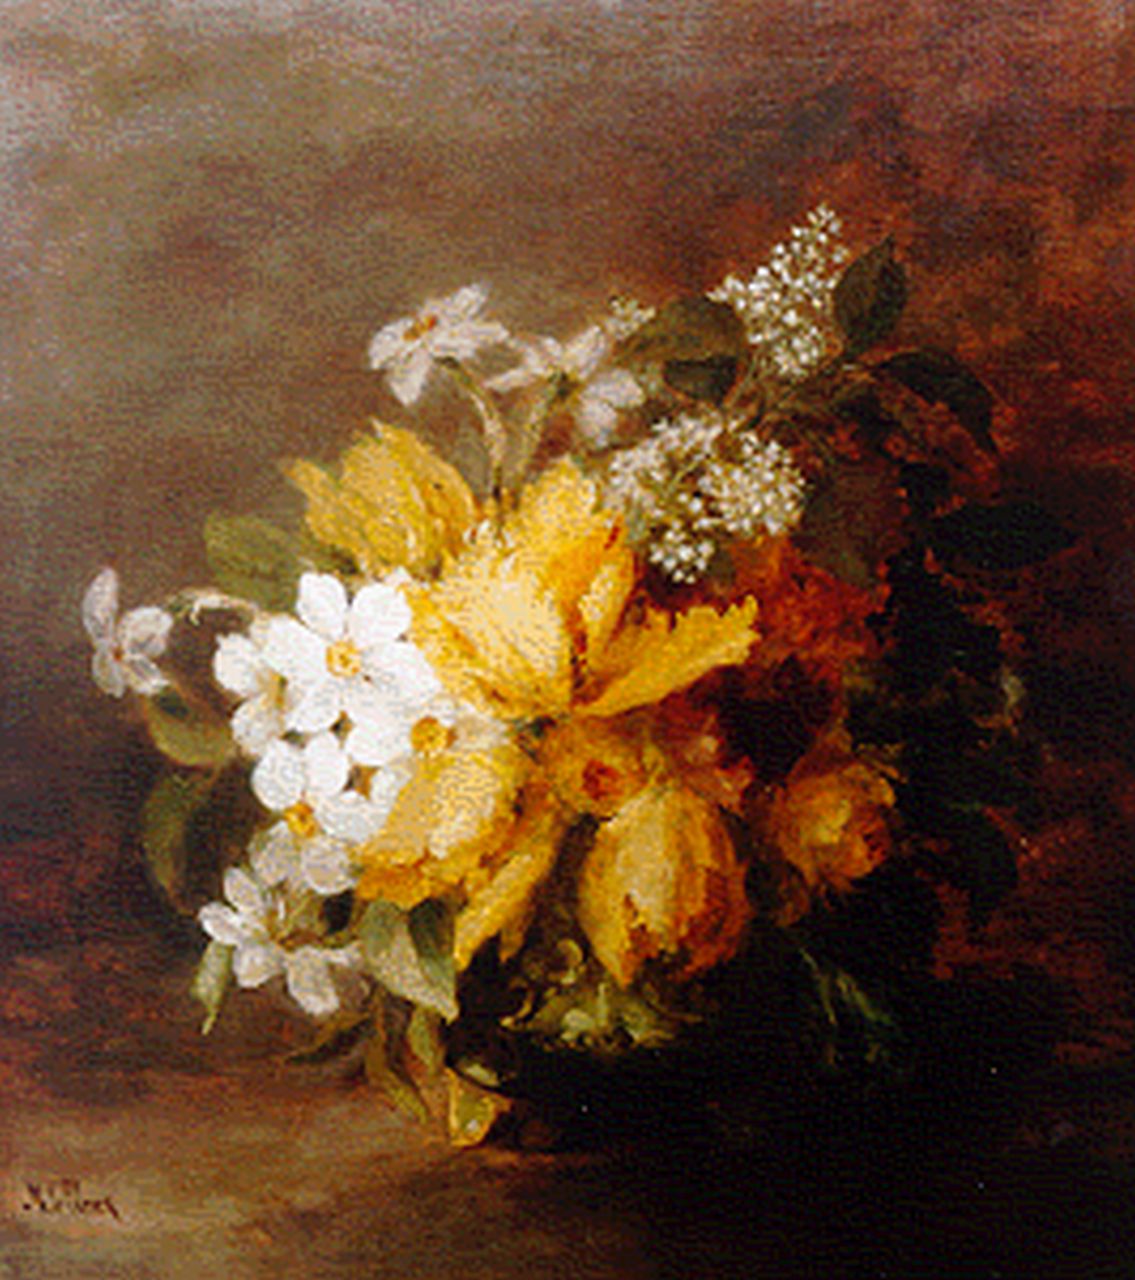 Clerq M.C. de | Marguérite Carolina de Clerq, Stilleven met bloemen in een vaas, olieverf op doek 58,5 x 52,5 cm, gesigneerd linksonder